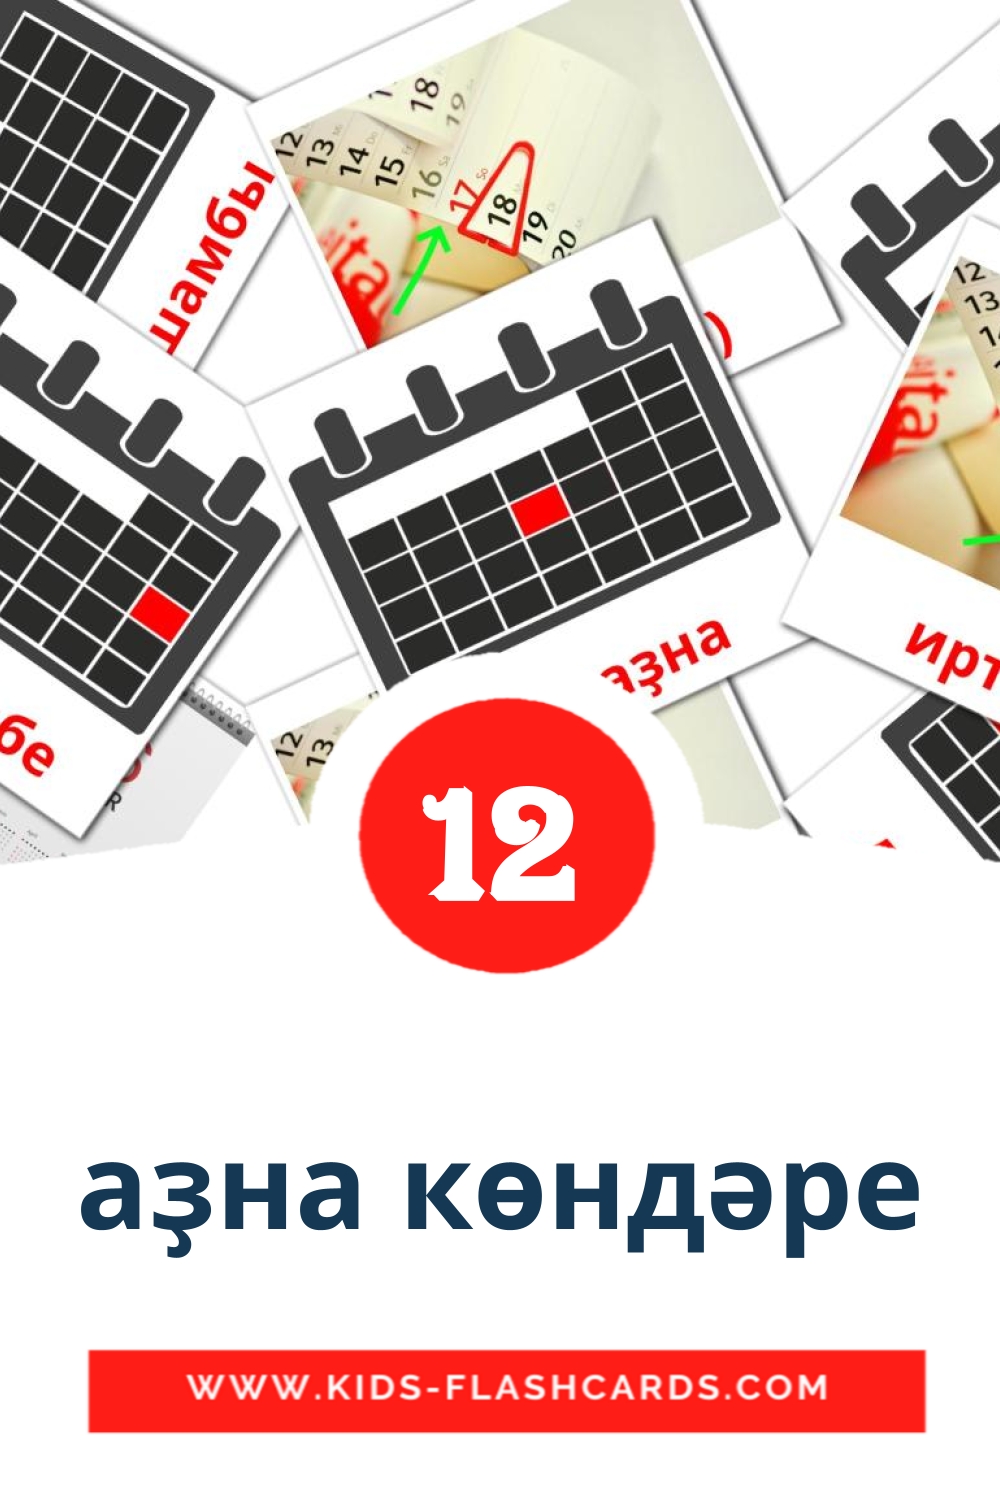 12 carte illustrate di аҙна көндәре per la scuola materna in bashkir